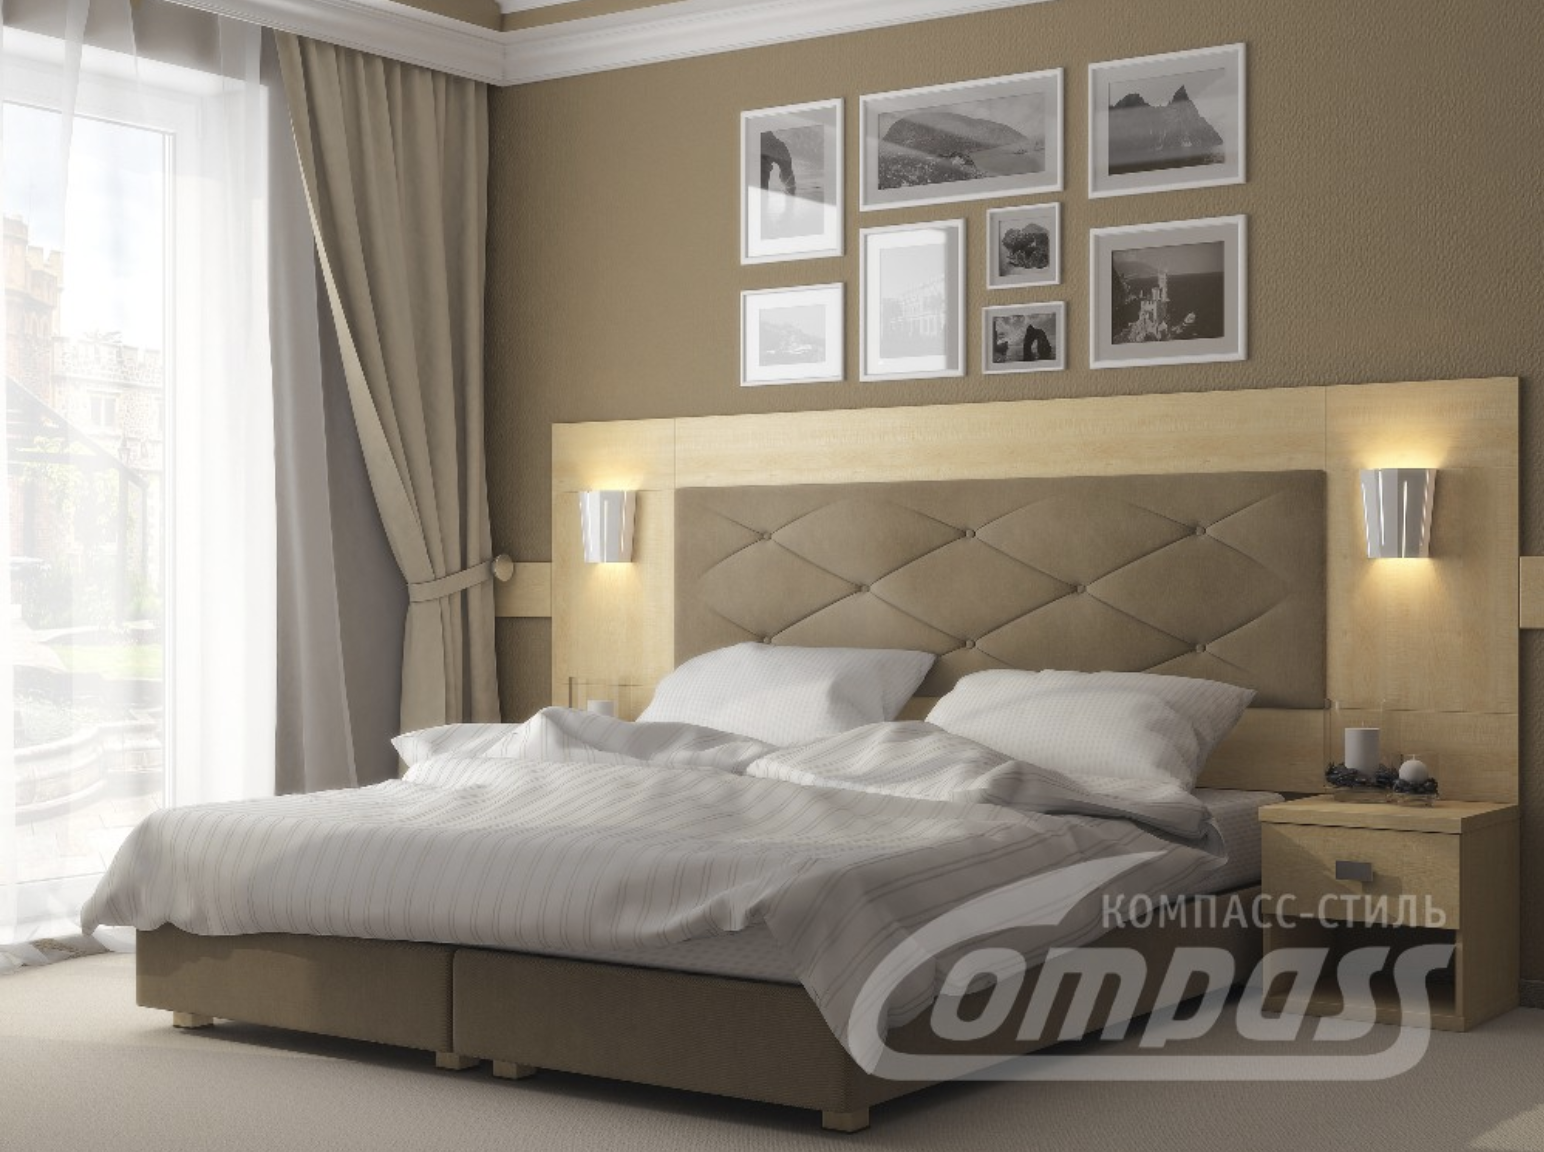 Кровати для отелей и гостиниц